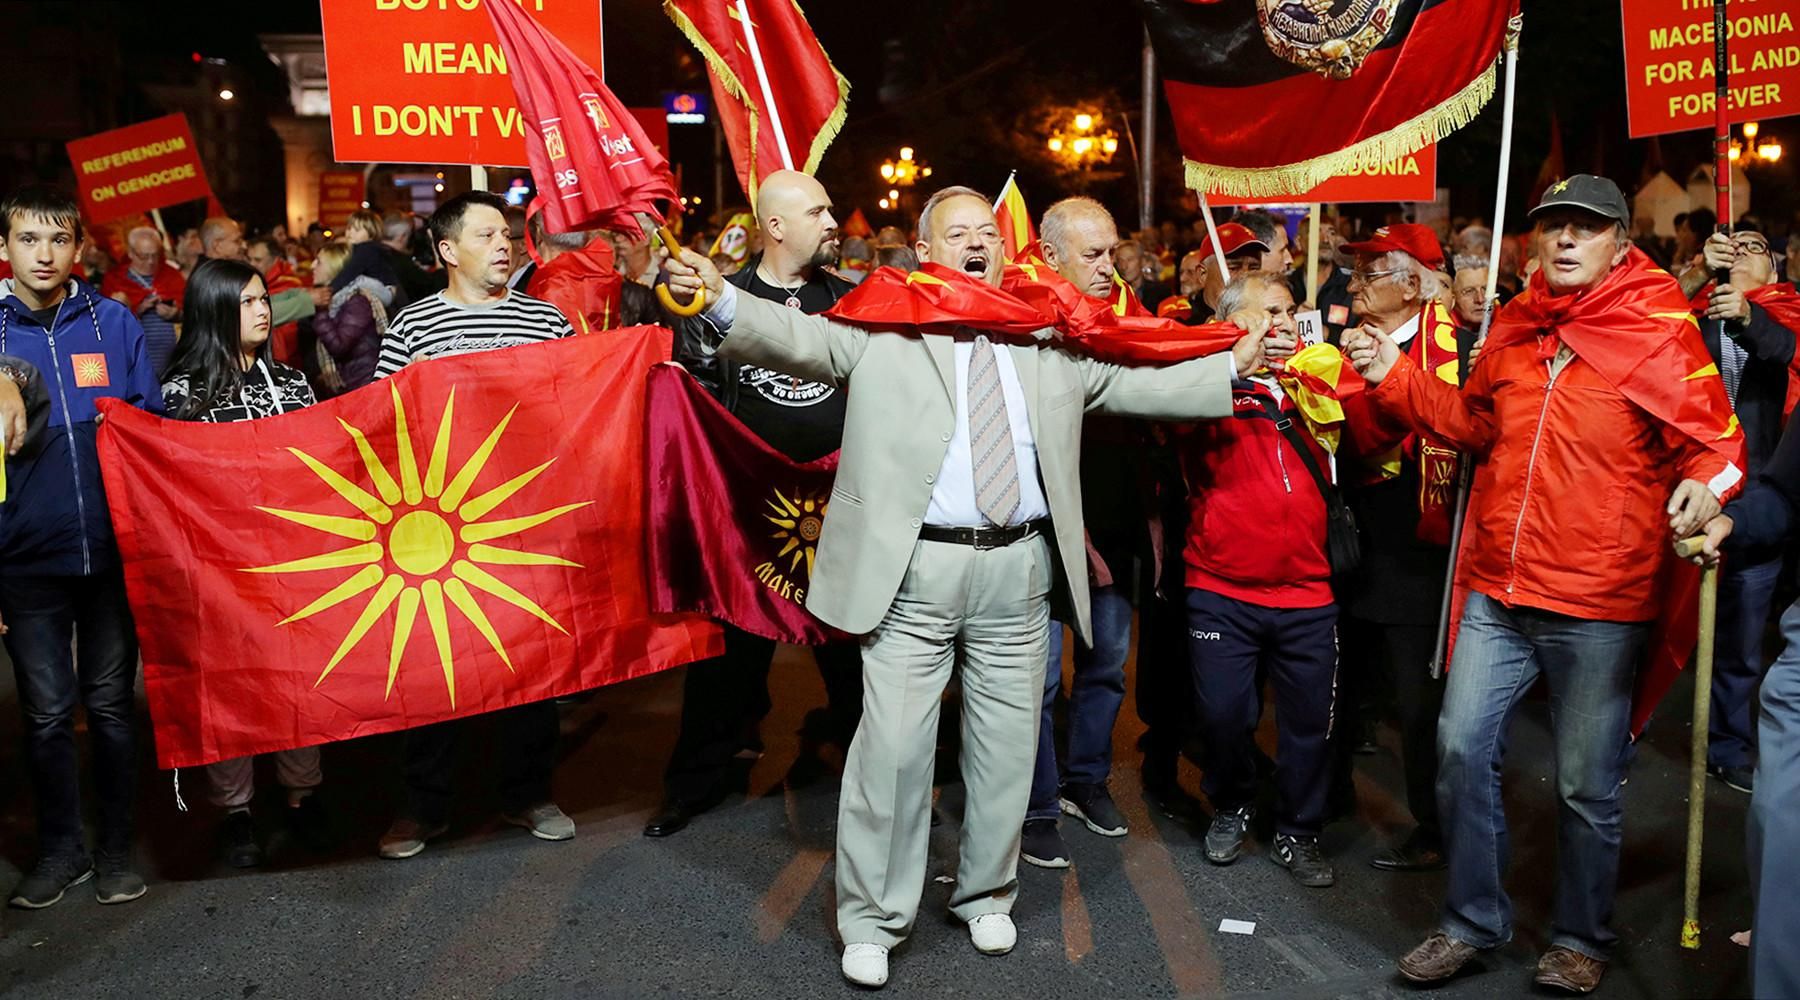 Протест в Скопье против переименования Македонии Reuters © Marko Djurica